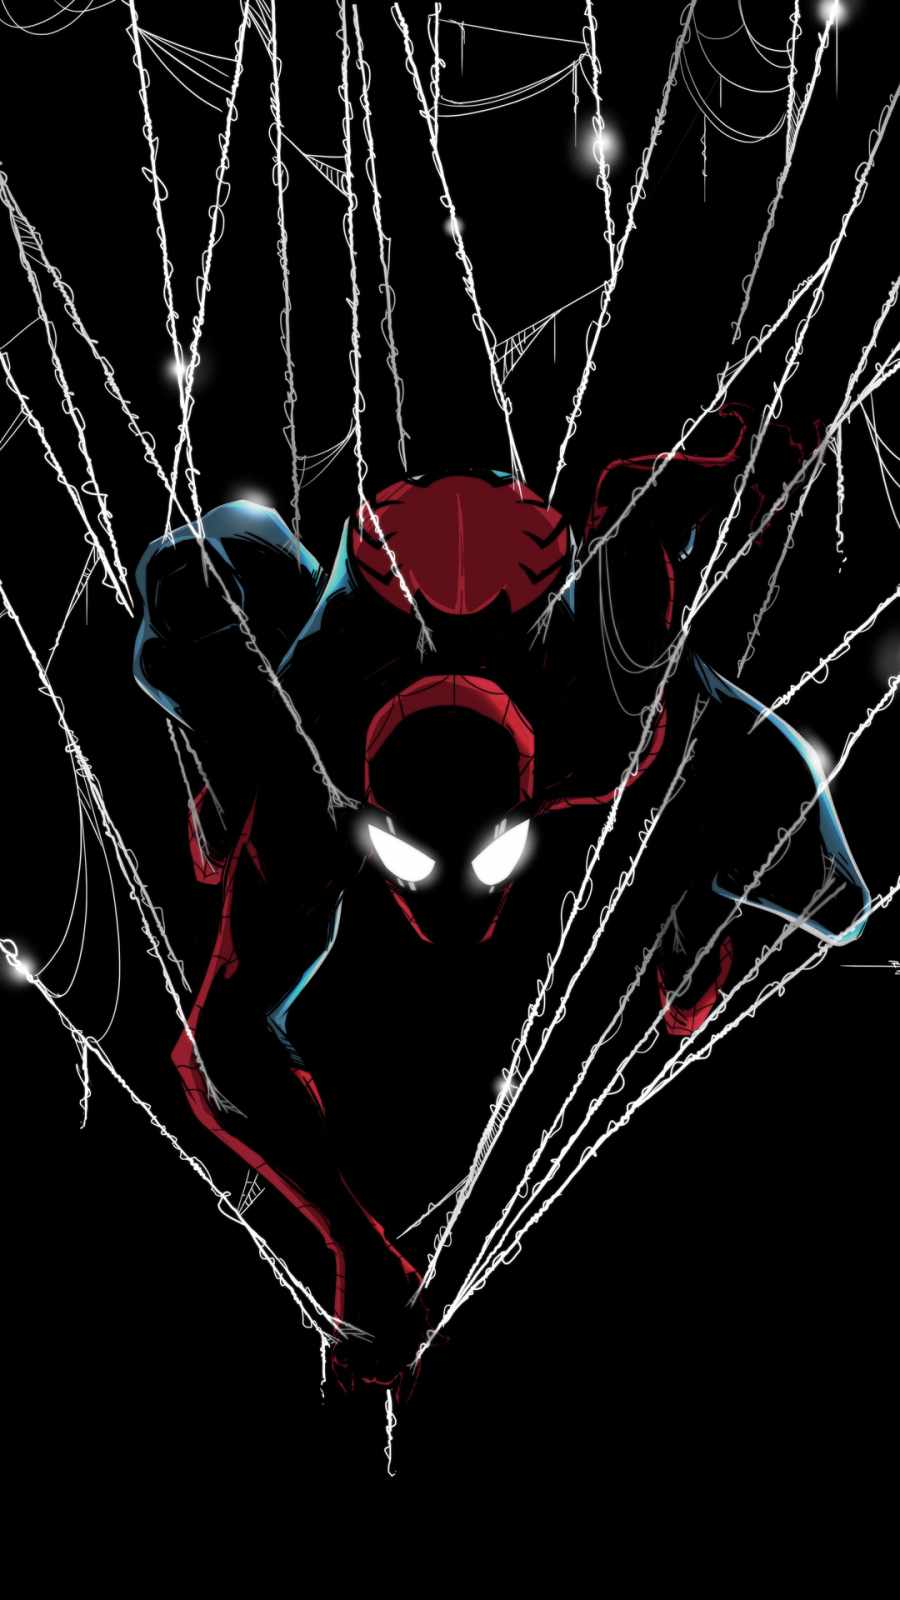 Dark spider man web iPhone Wallpaper